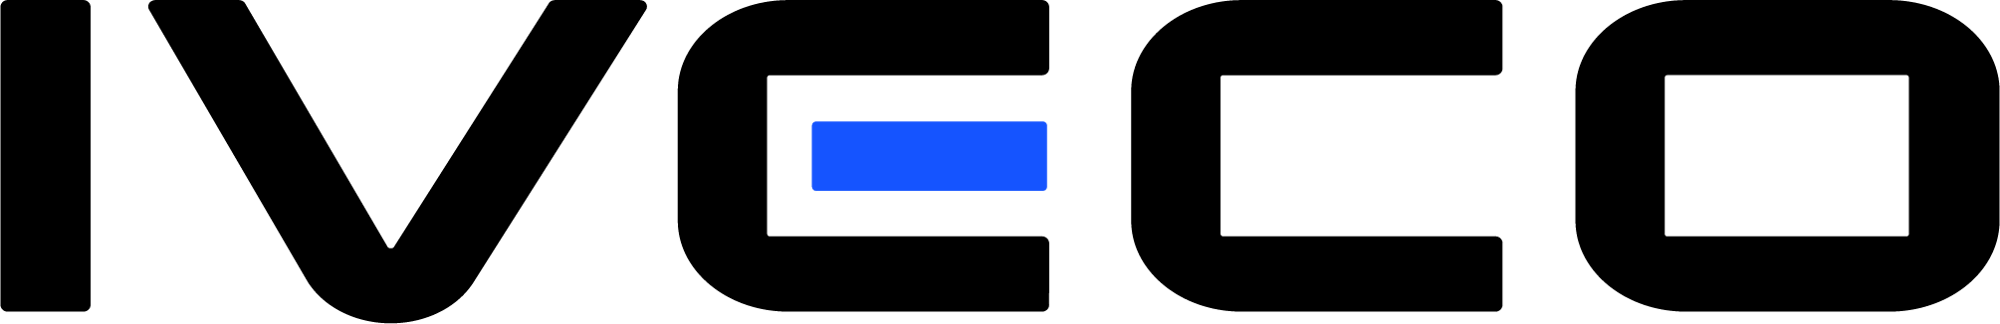 IVECO_Logo_RGB_web-1